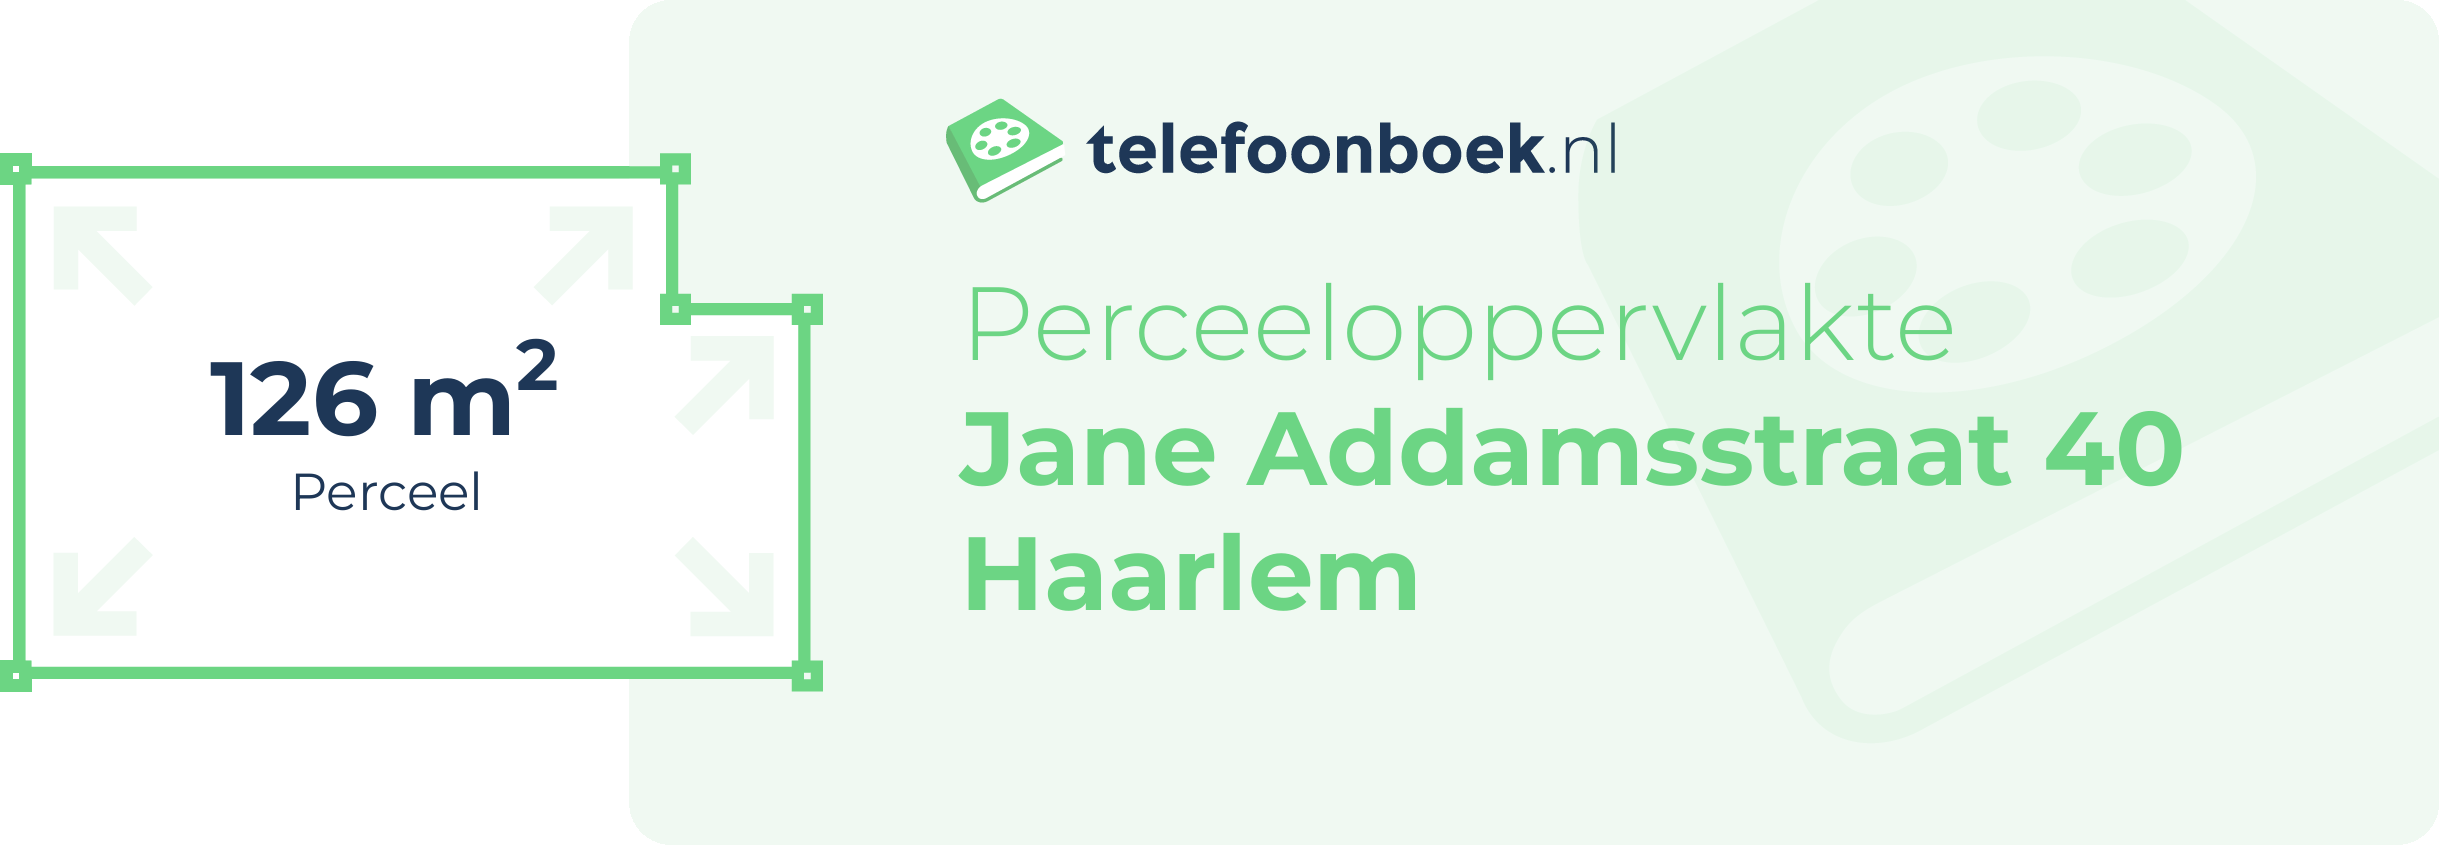 Perceeloppervlakte Jane Addamsstraat 40 Haarlem